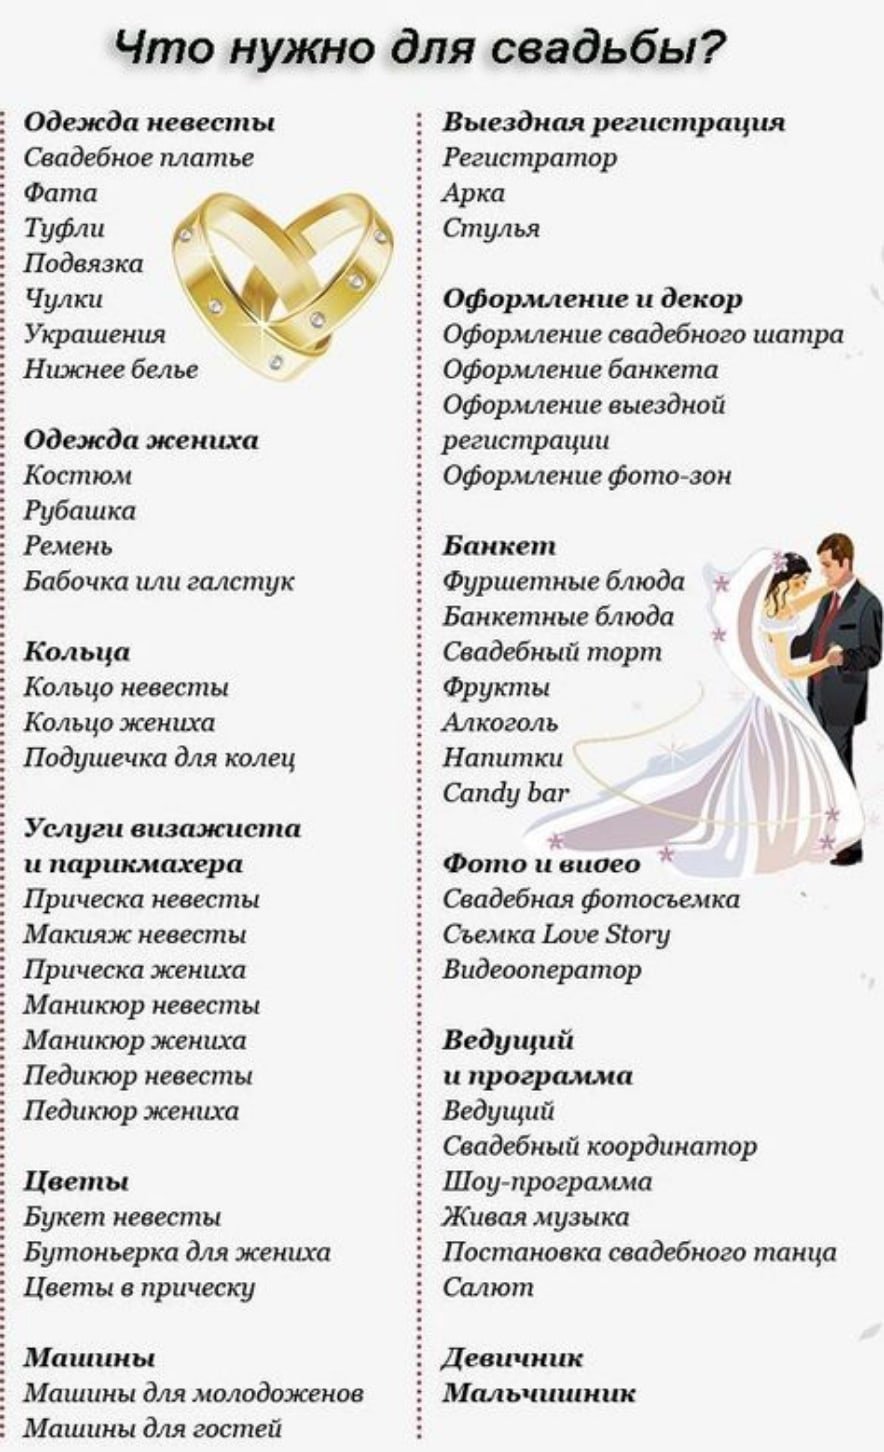 Список дел на свадьбу